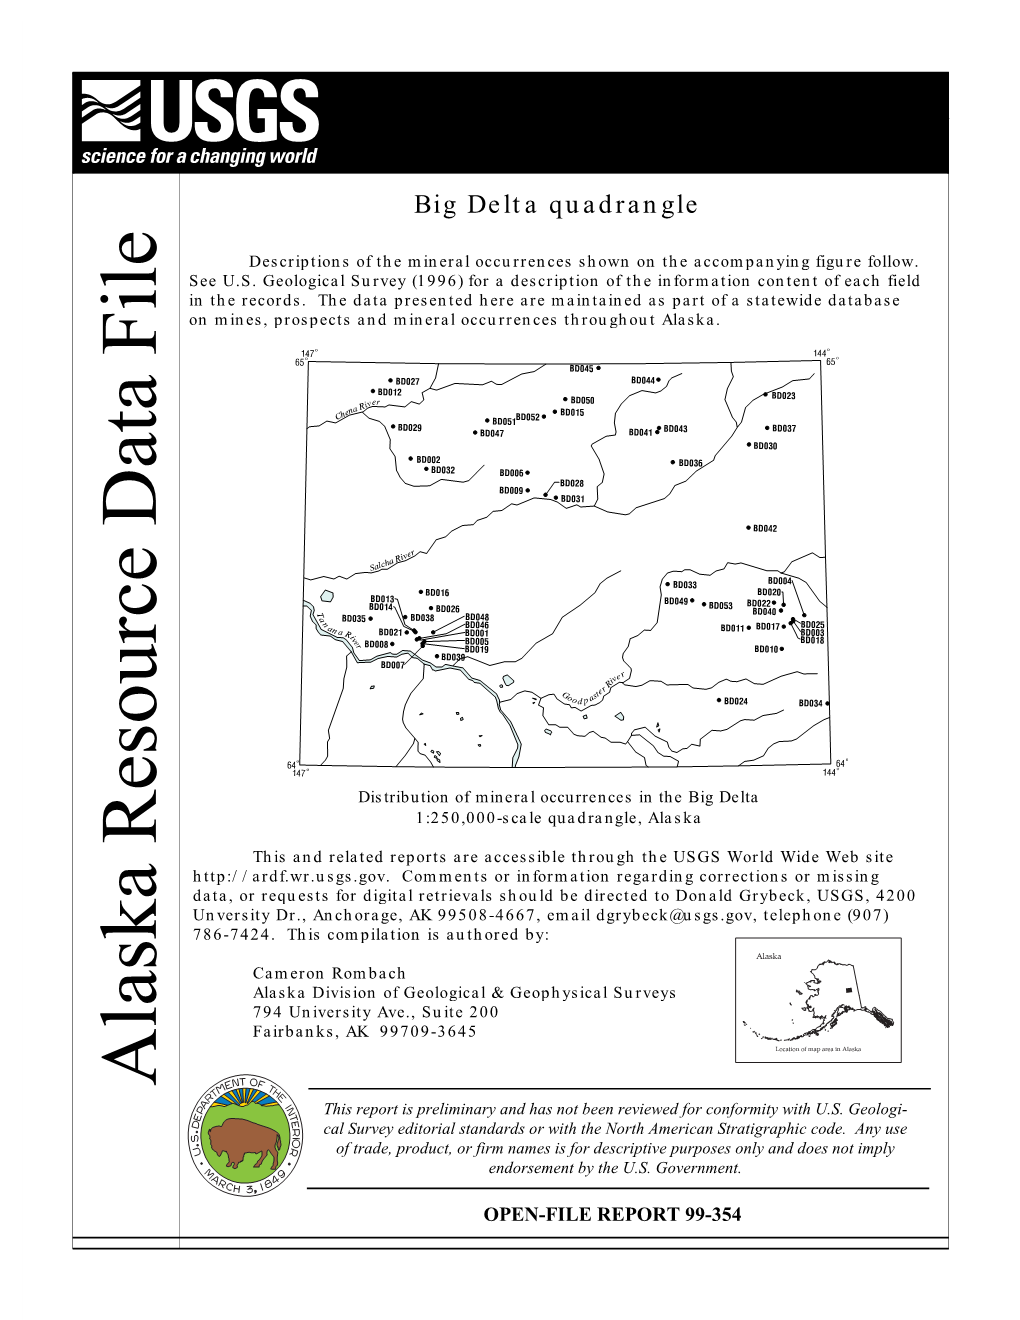 Big Delta Quadrangle Delta Big 1:250,000 - 3645